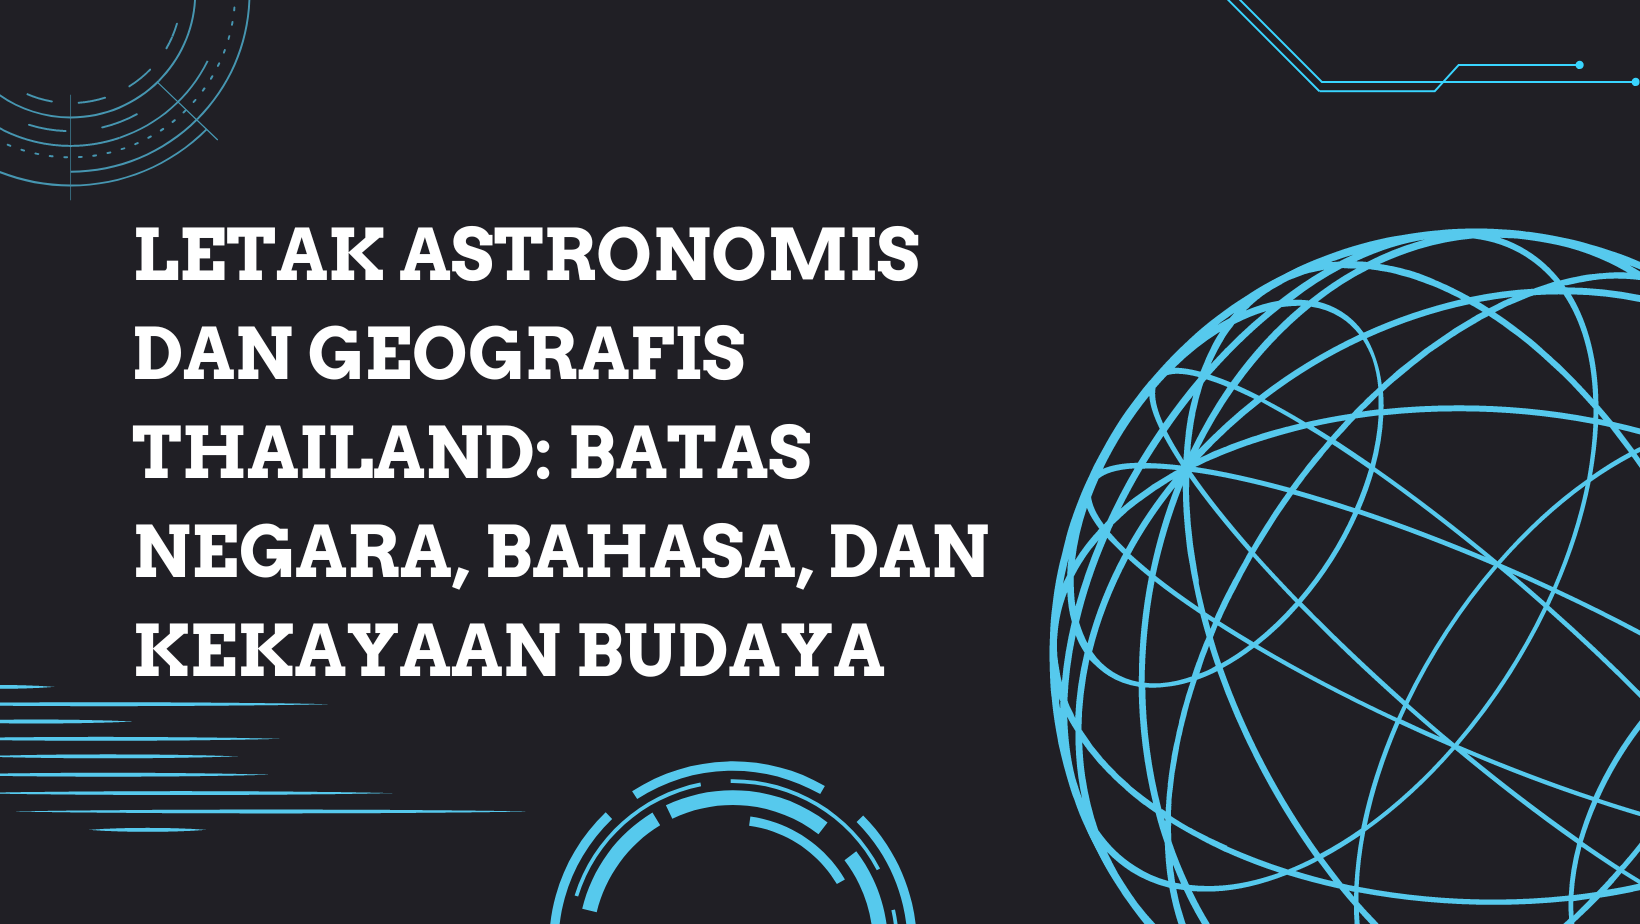 Letak Astronomis Thailand